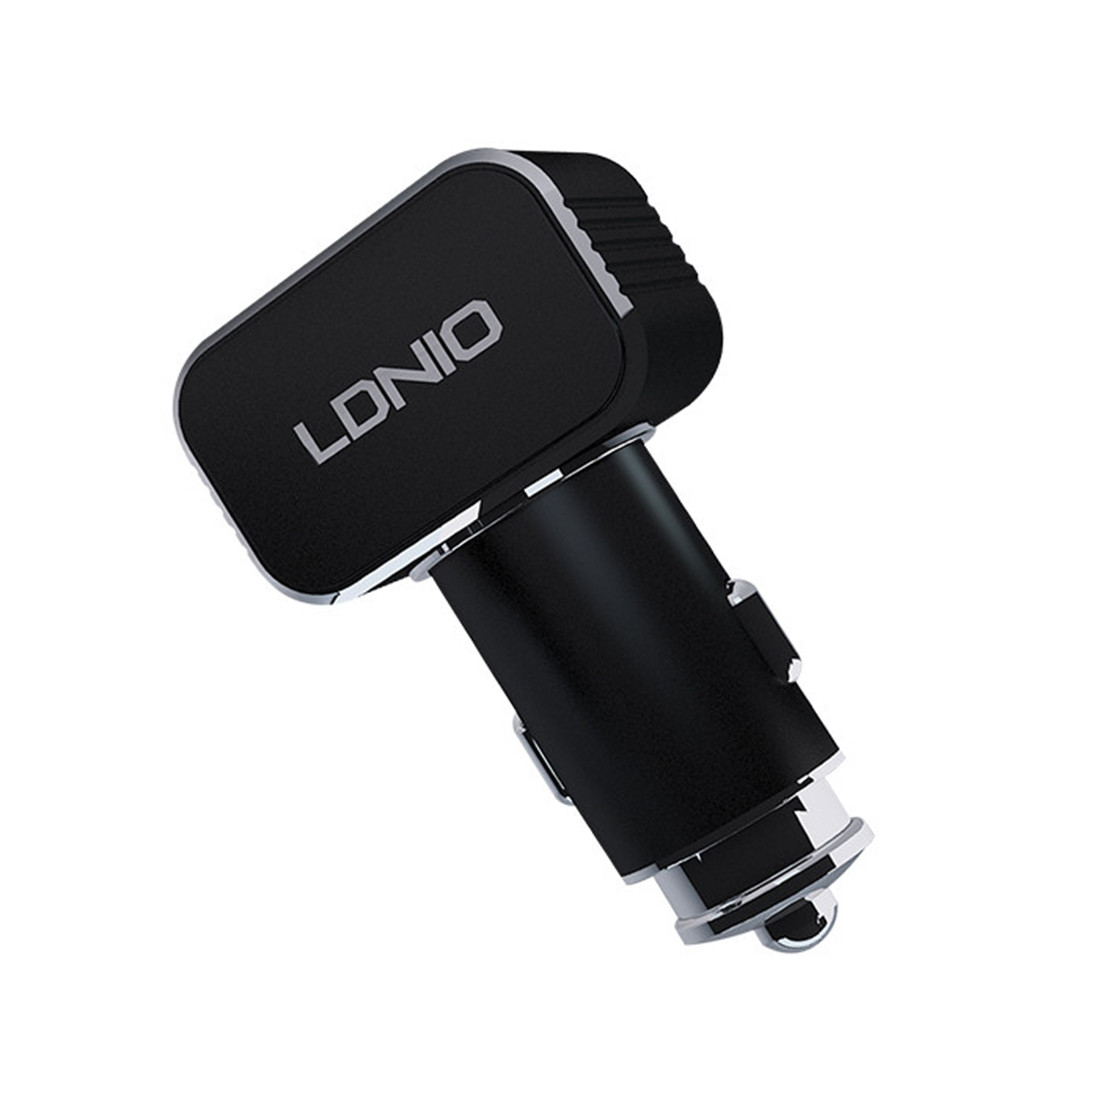 Автомобильное зарядное устройство  LDNIO  C306  2*USB-A  18W  5V-3.6A Auto-Max  Кабель Lightning (Iphone) 1м